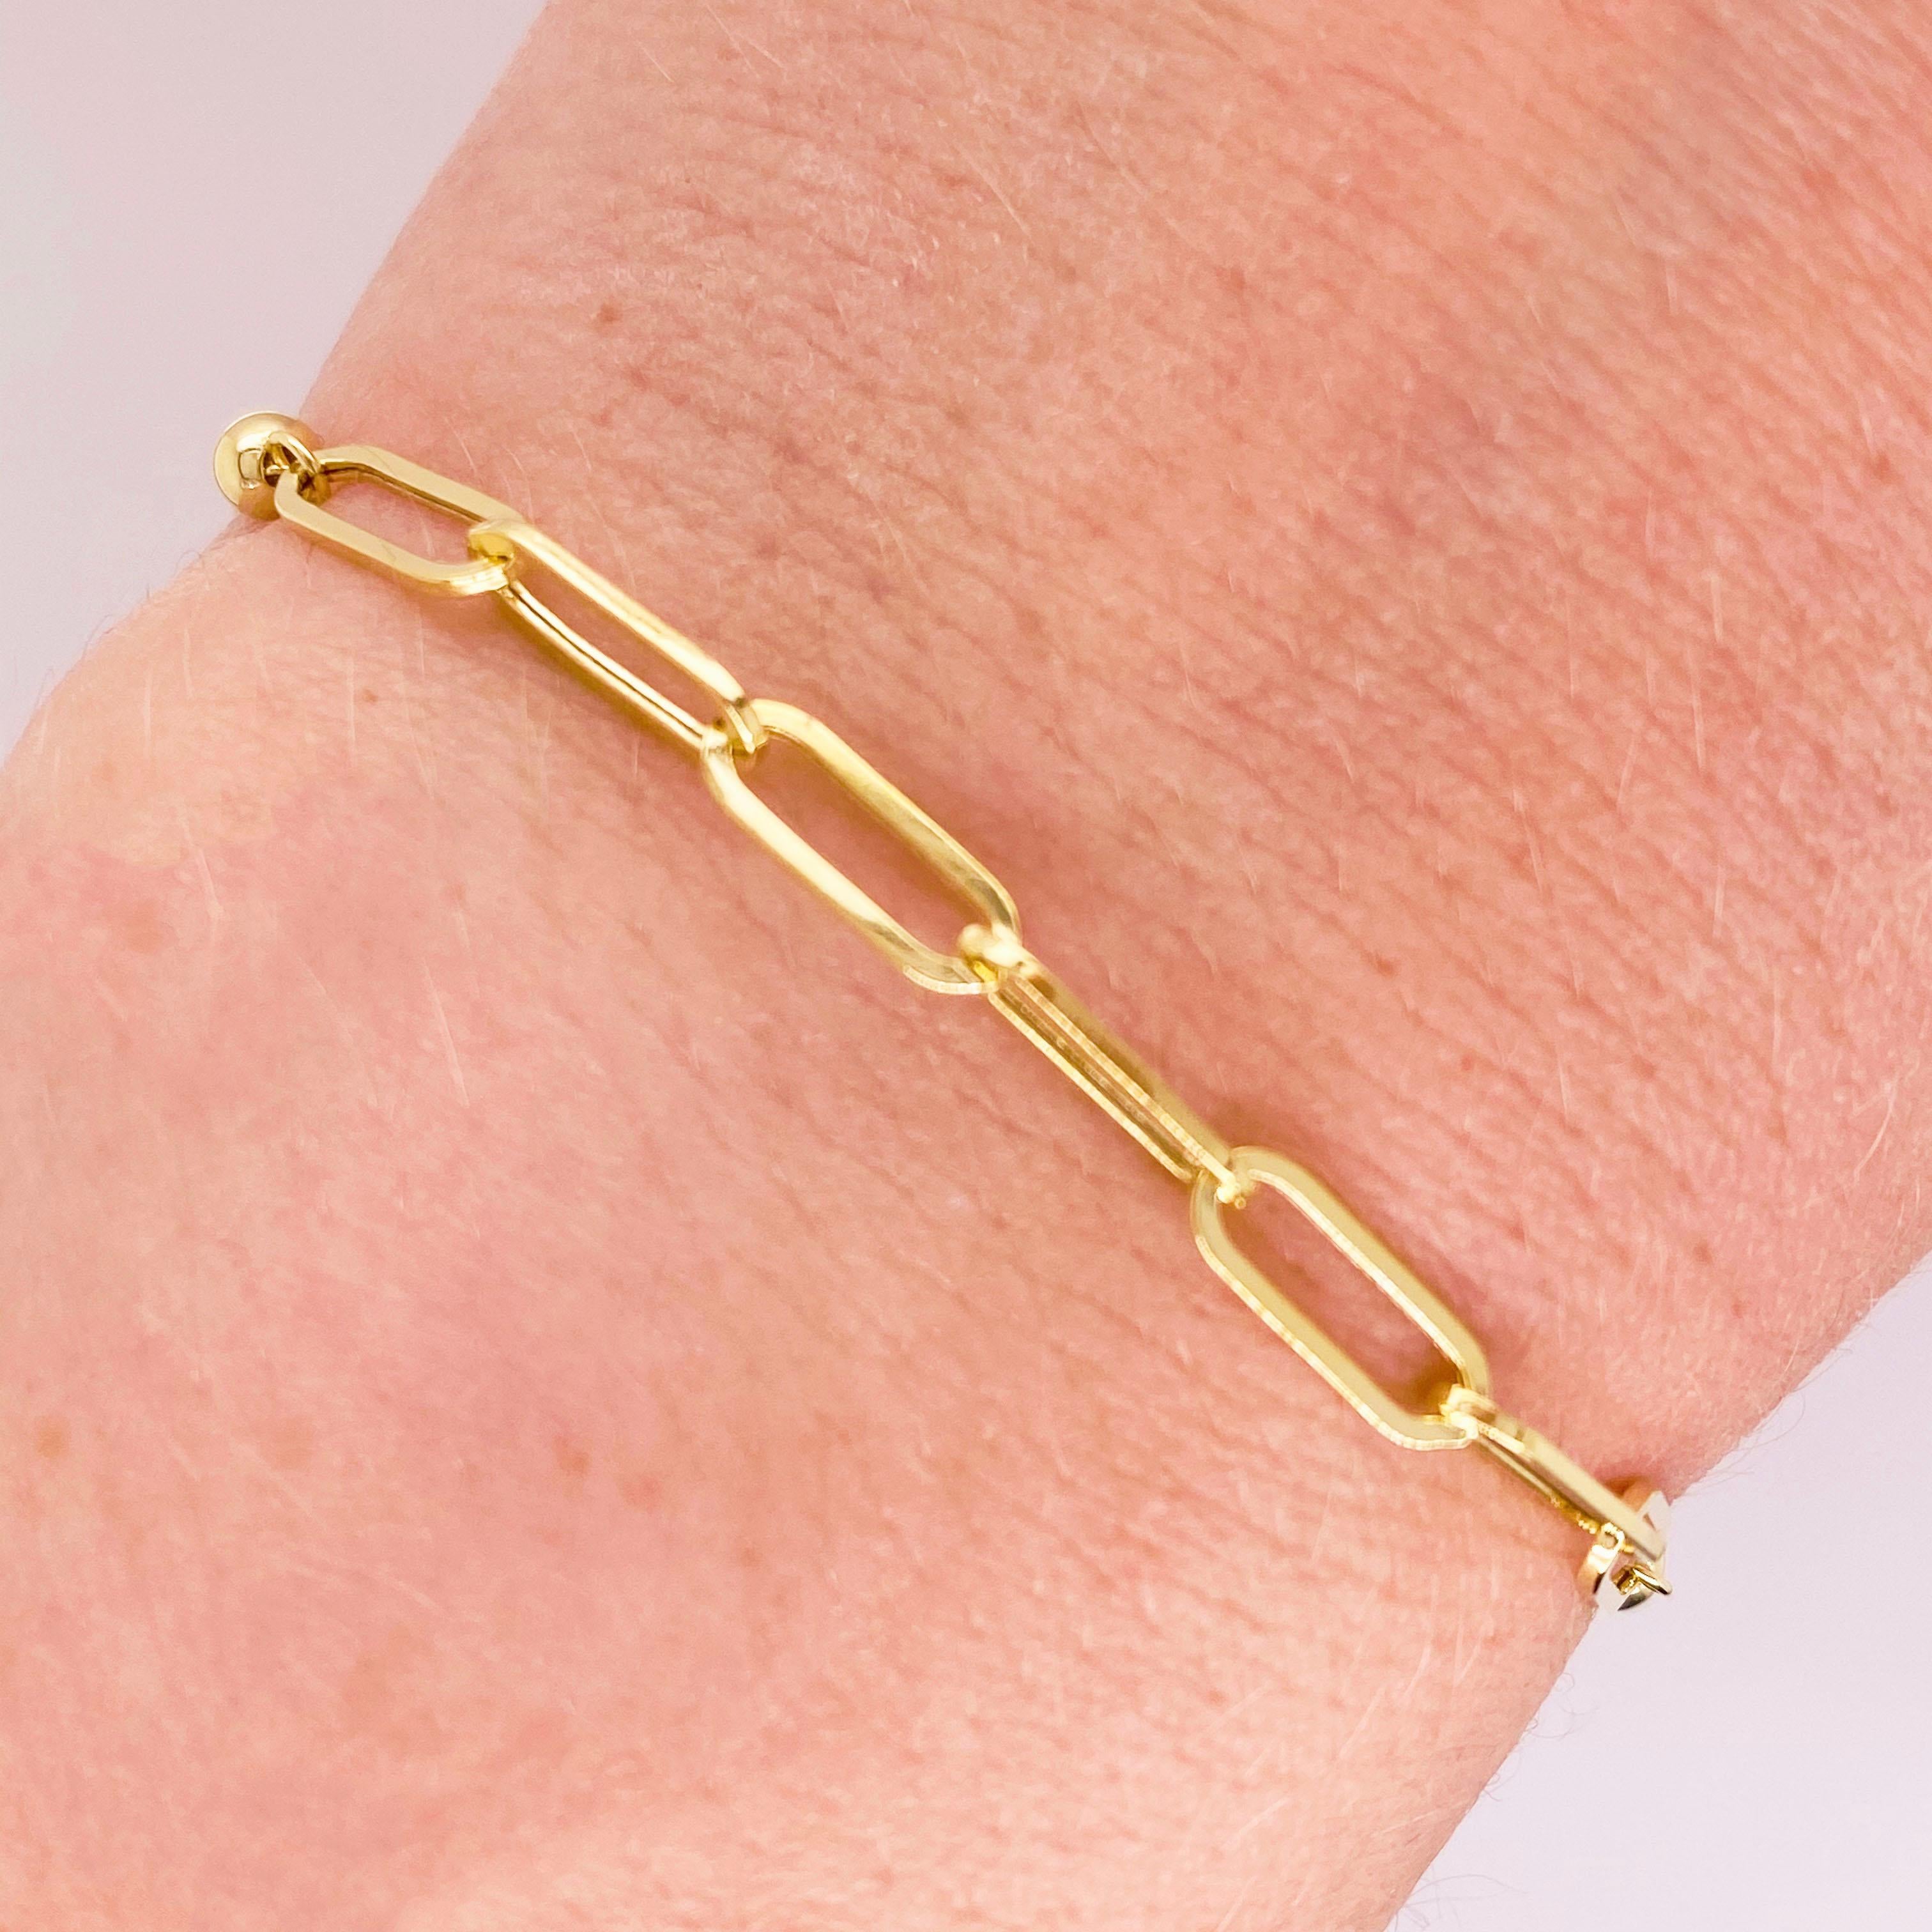 Les chaînes de trombones sont le produit le plus en vogue dans la mode des bijoux de 2020 ! Ce bracelet en or jaune 14k s'accorde avec tout et est le complément parfait de toute tenue, décontractée ou formelle. Le fermoir bolo de ce bracelet vous